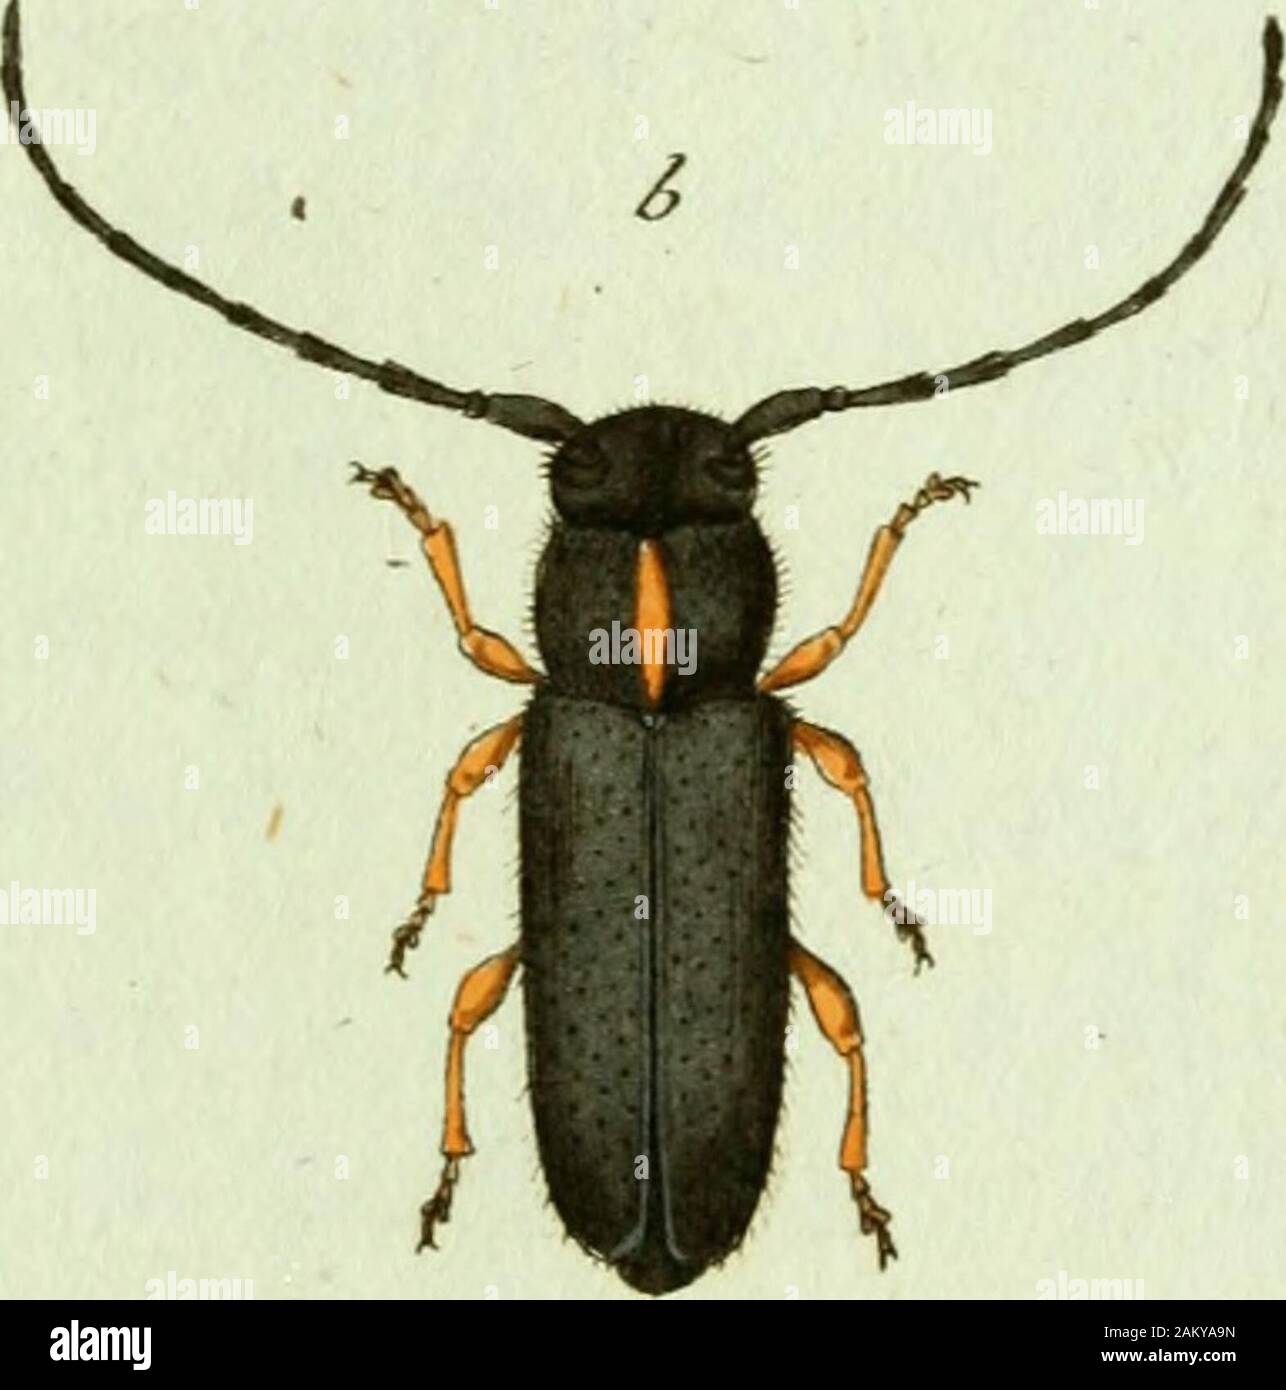 Favnae insectorvm Germanicae initia, oder, Deutschlands Insecten . J&gt;upefcLt Eijhivpuitn ^JaAn S A P E R D A E p h i p p i u iu. Der Sehneckenkäfer mit der weissen Rückens treijfe. Saperda Epliippium: nigra thoracis linea dorsaü scutellöque cinereis, fe«xnoribus ferrugineis. Fabric. Syst. Ent. T. II. n. 49« p. 3i7« Ist auch in Deutschland zu Hause; Hr. Hofapothecker uud JMedici-not Assessor Baader zu Msnnheim traf ihn in seinem Garten auf einesKohlpflanze an. a. Natürliche Grösse, b. Veigiösserung, Drey und zwanzigsles Heft, 17. J&gt; aperda, /tneola CTadn 3APERDA iineola. Der Schneckenküfe Stock Photo